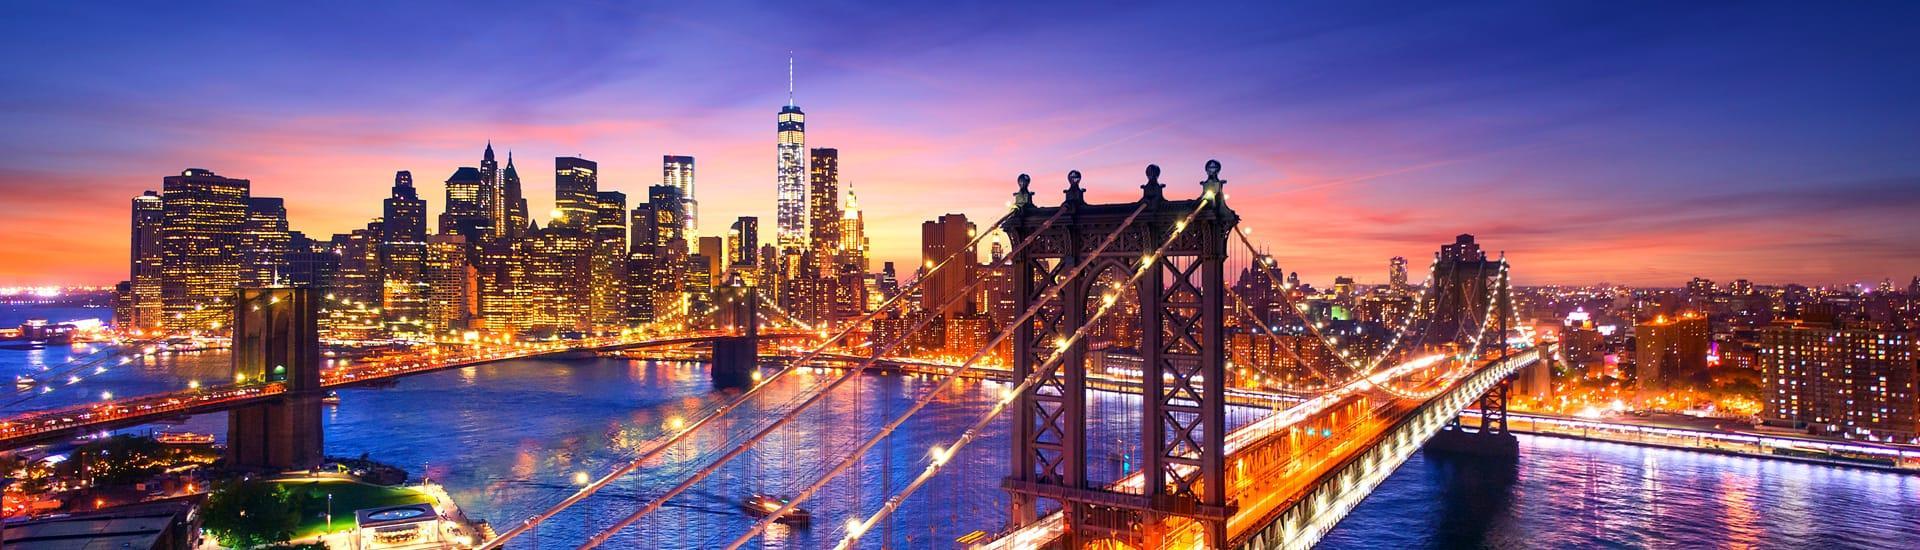 ابحث عن أفضل الفنادق في مدينة نيويورك